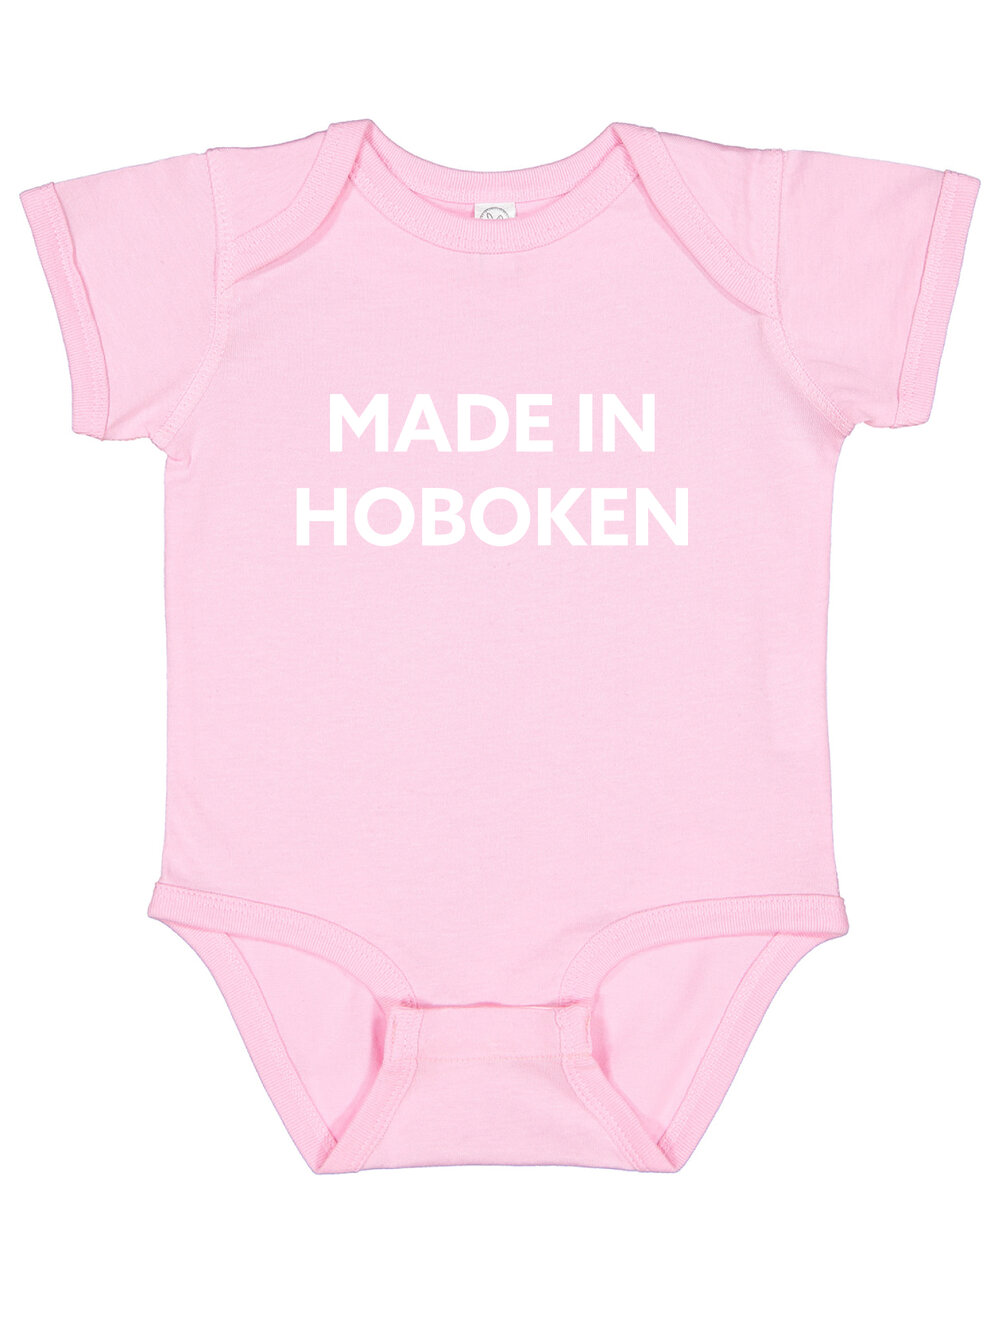 hobokengirl infant onsie 